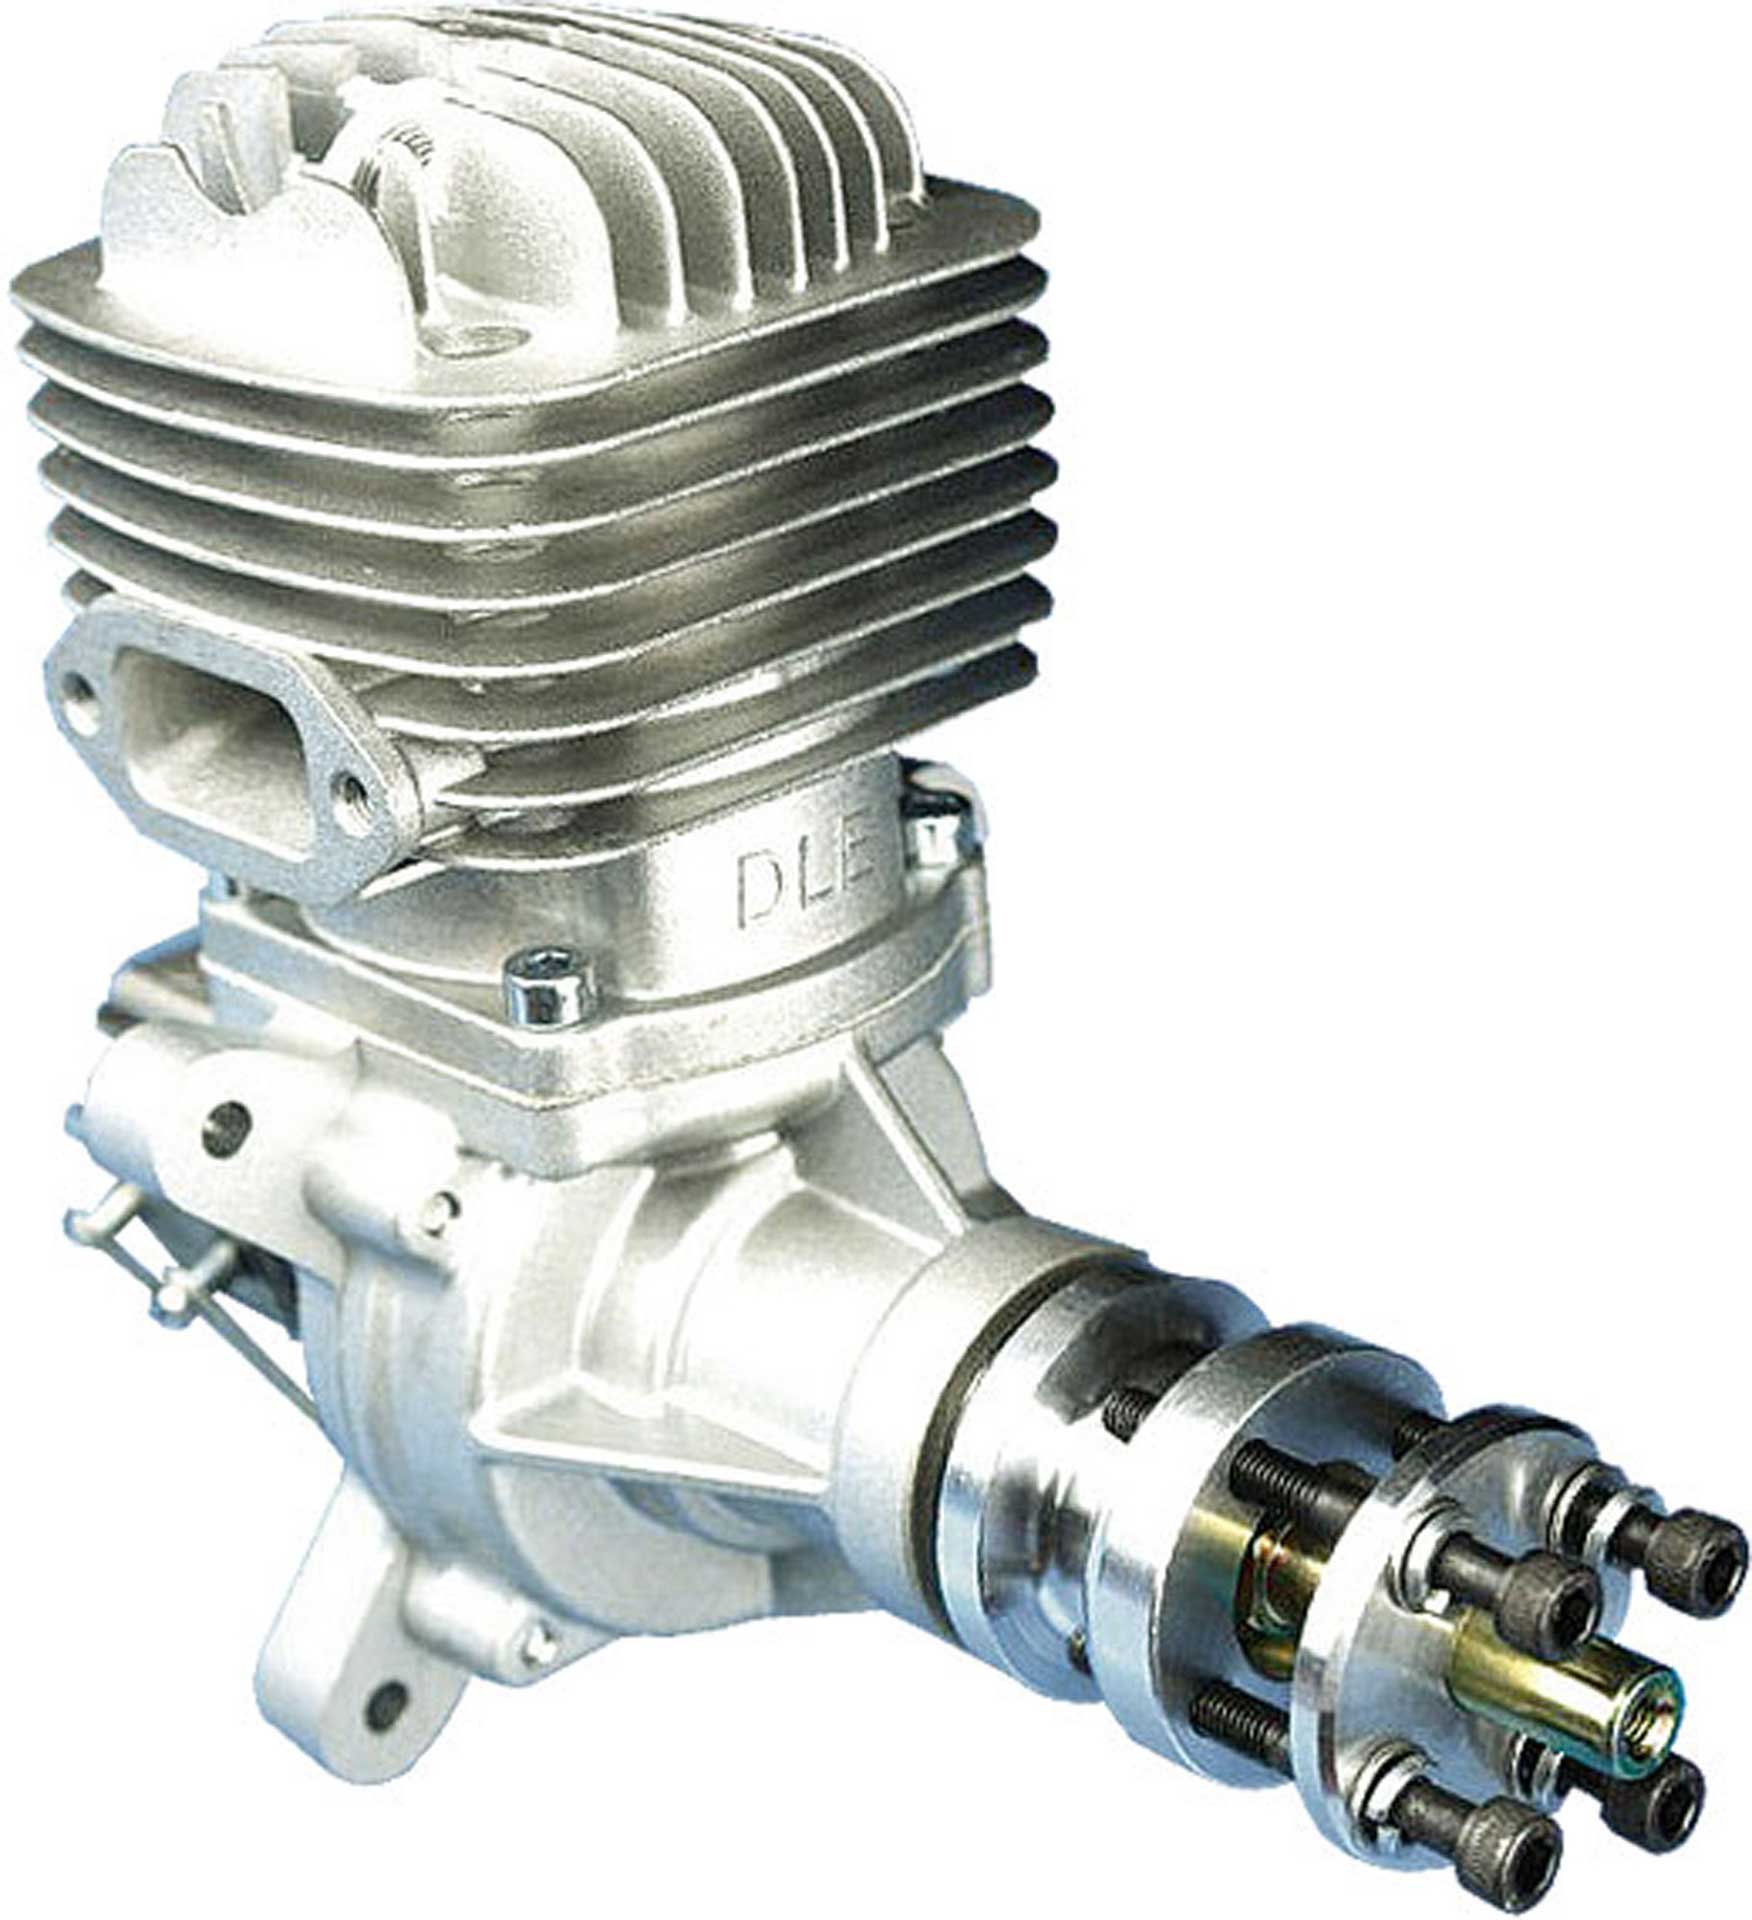 DLE Engines DLE 61 Moteur essence "Original